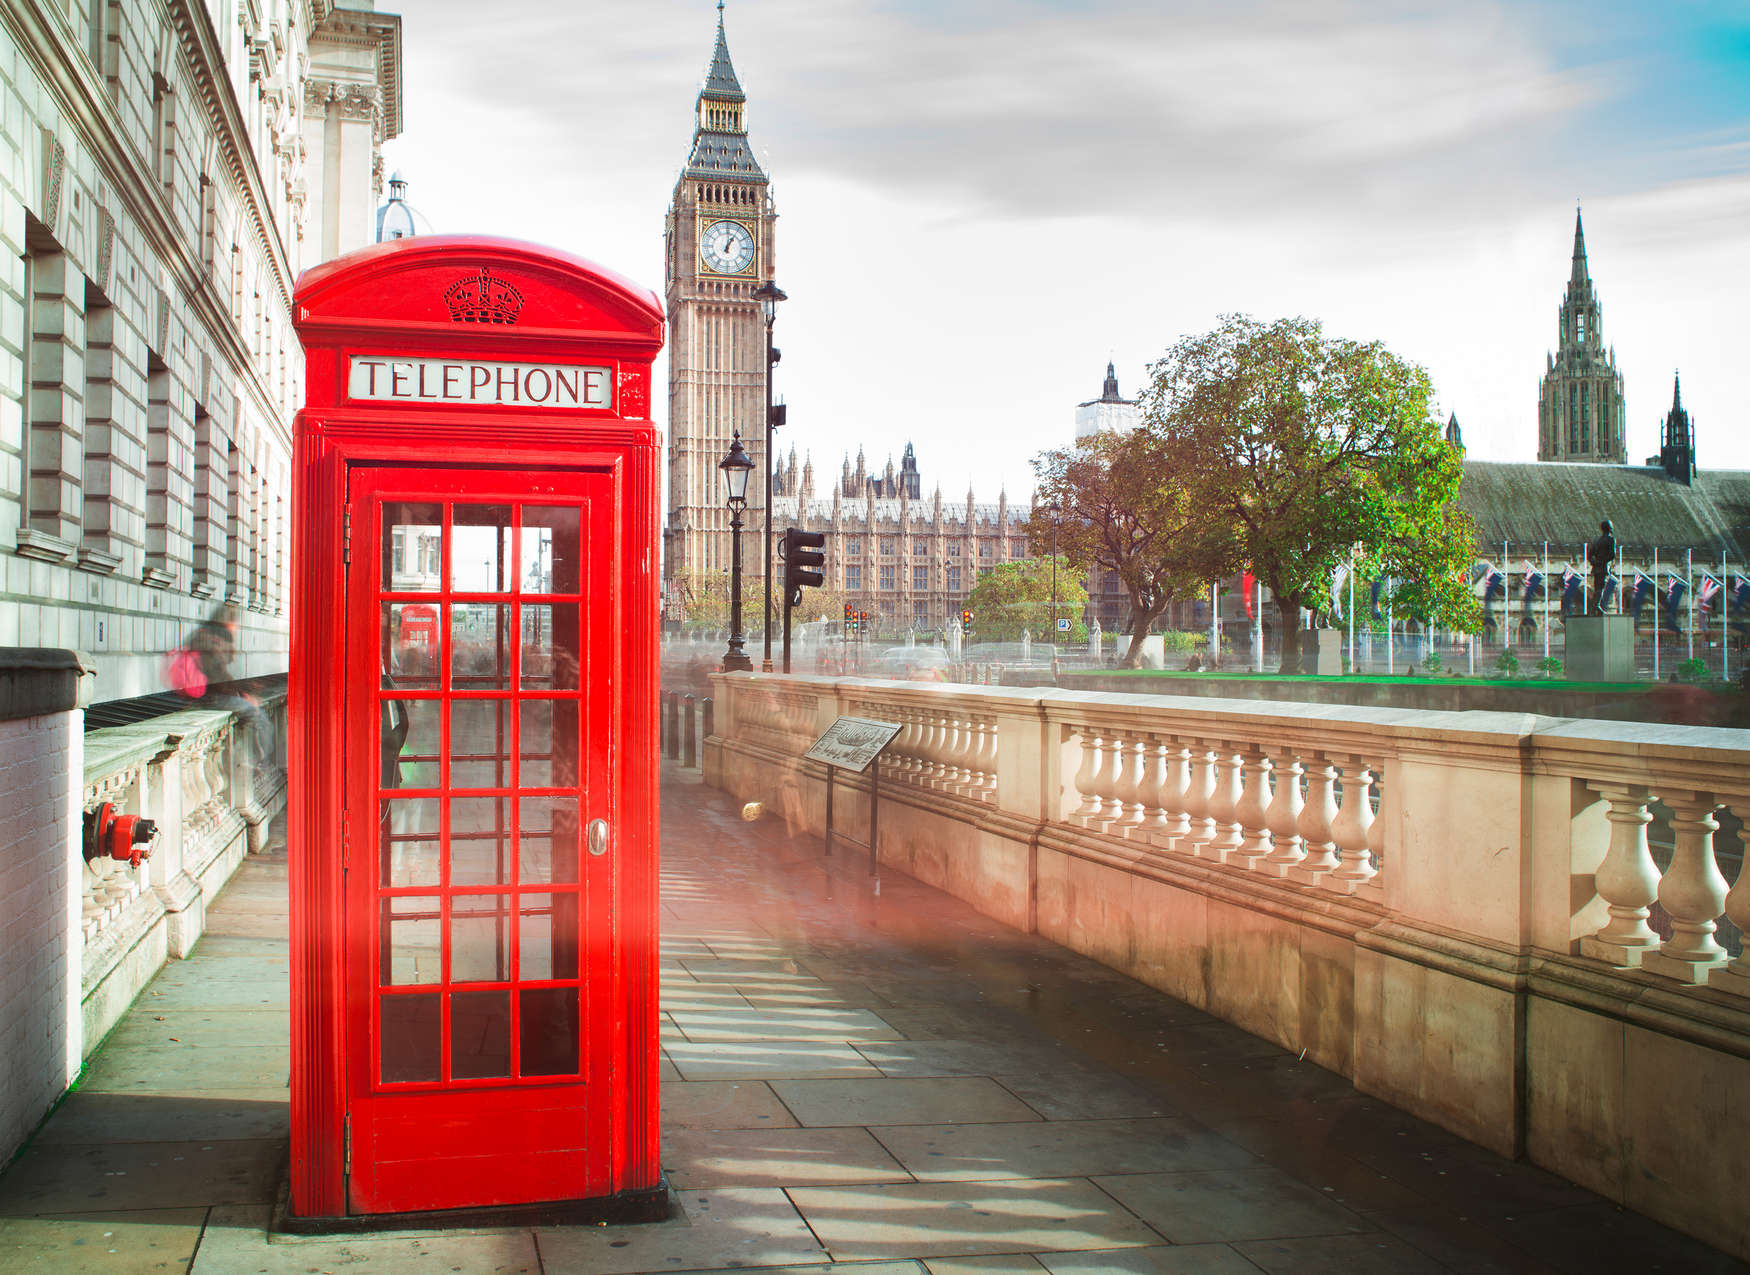             Cabina telefónica roja en Londres - Rojo, Marrón, Verde
        